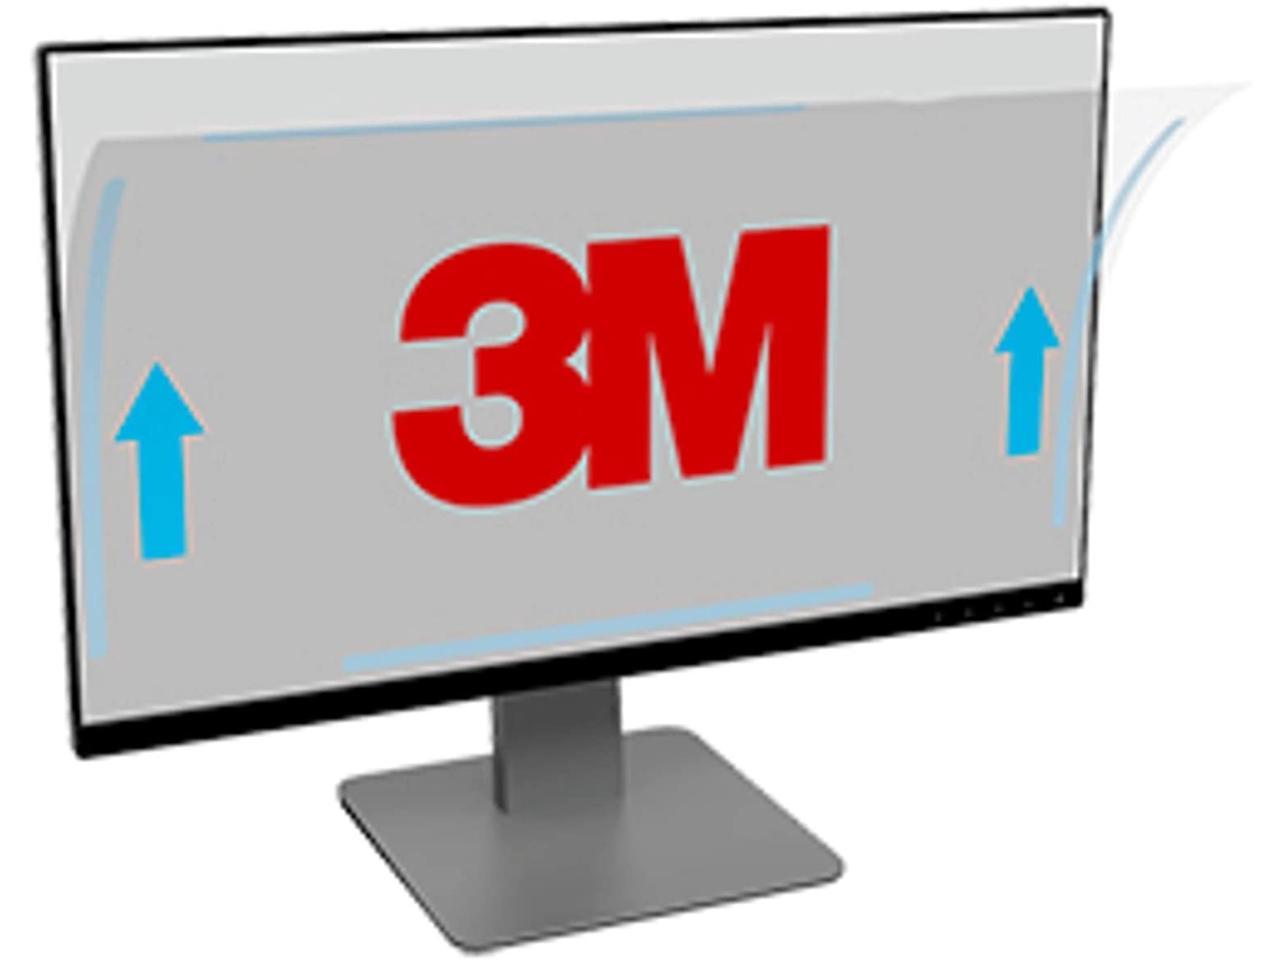 3M Antiglare Frameless Filter for 19.5" Widescreen Monitor, 16:9 Aspect Ratio